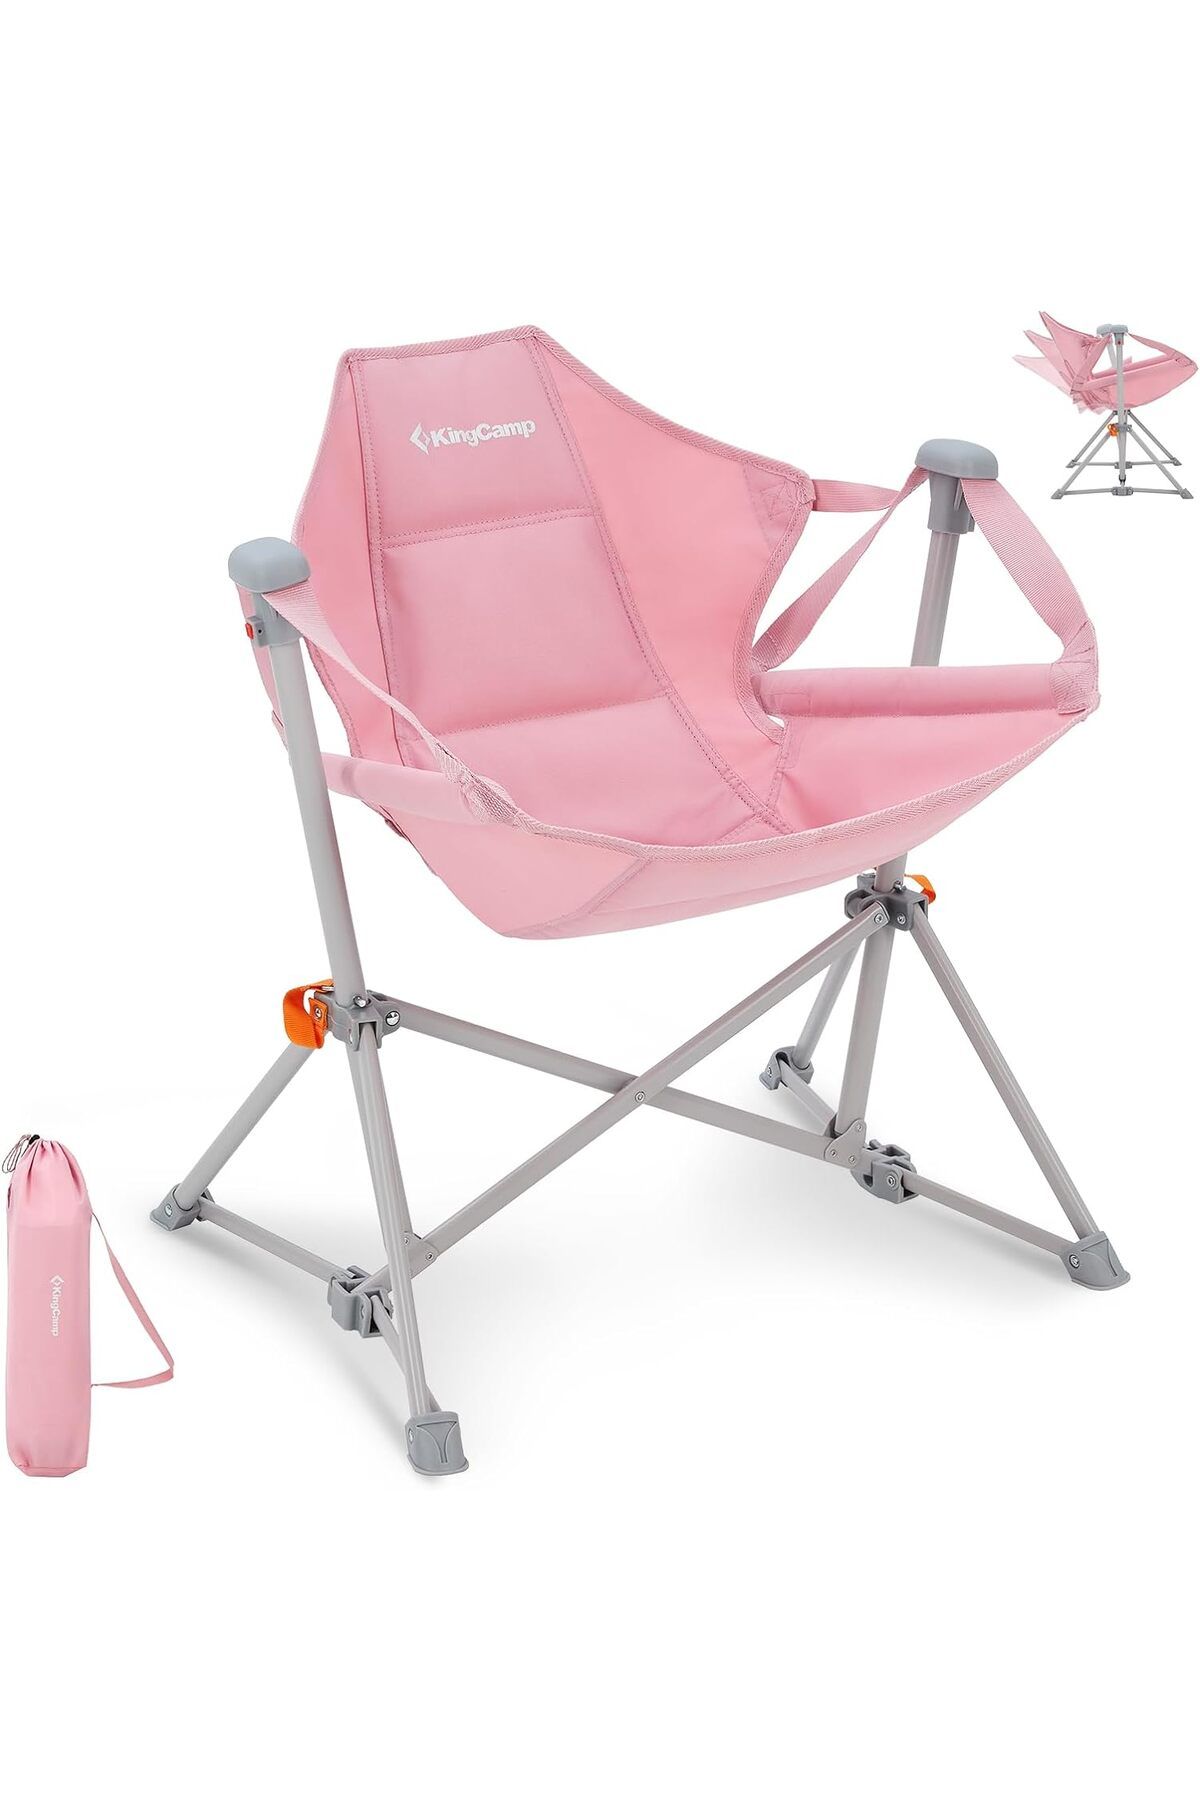 KINGCAMP Katlanabilir Mini Kamp Sandalyesi - Çocuklar için - İç Mekan, Dış Mekan, Yaşam Bahçesi, Veranda